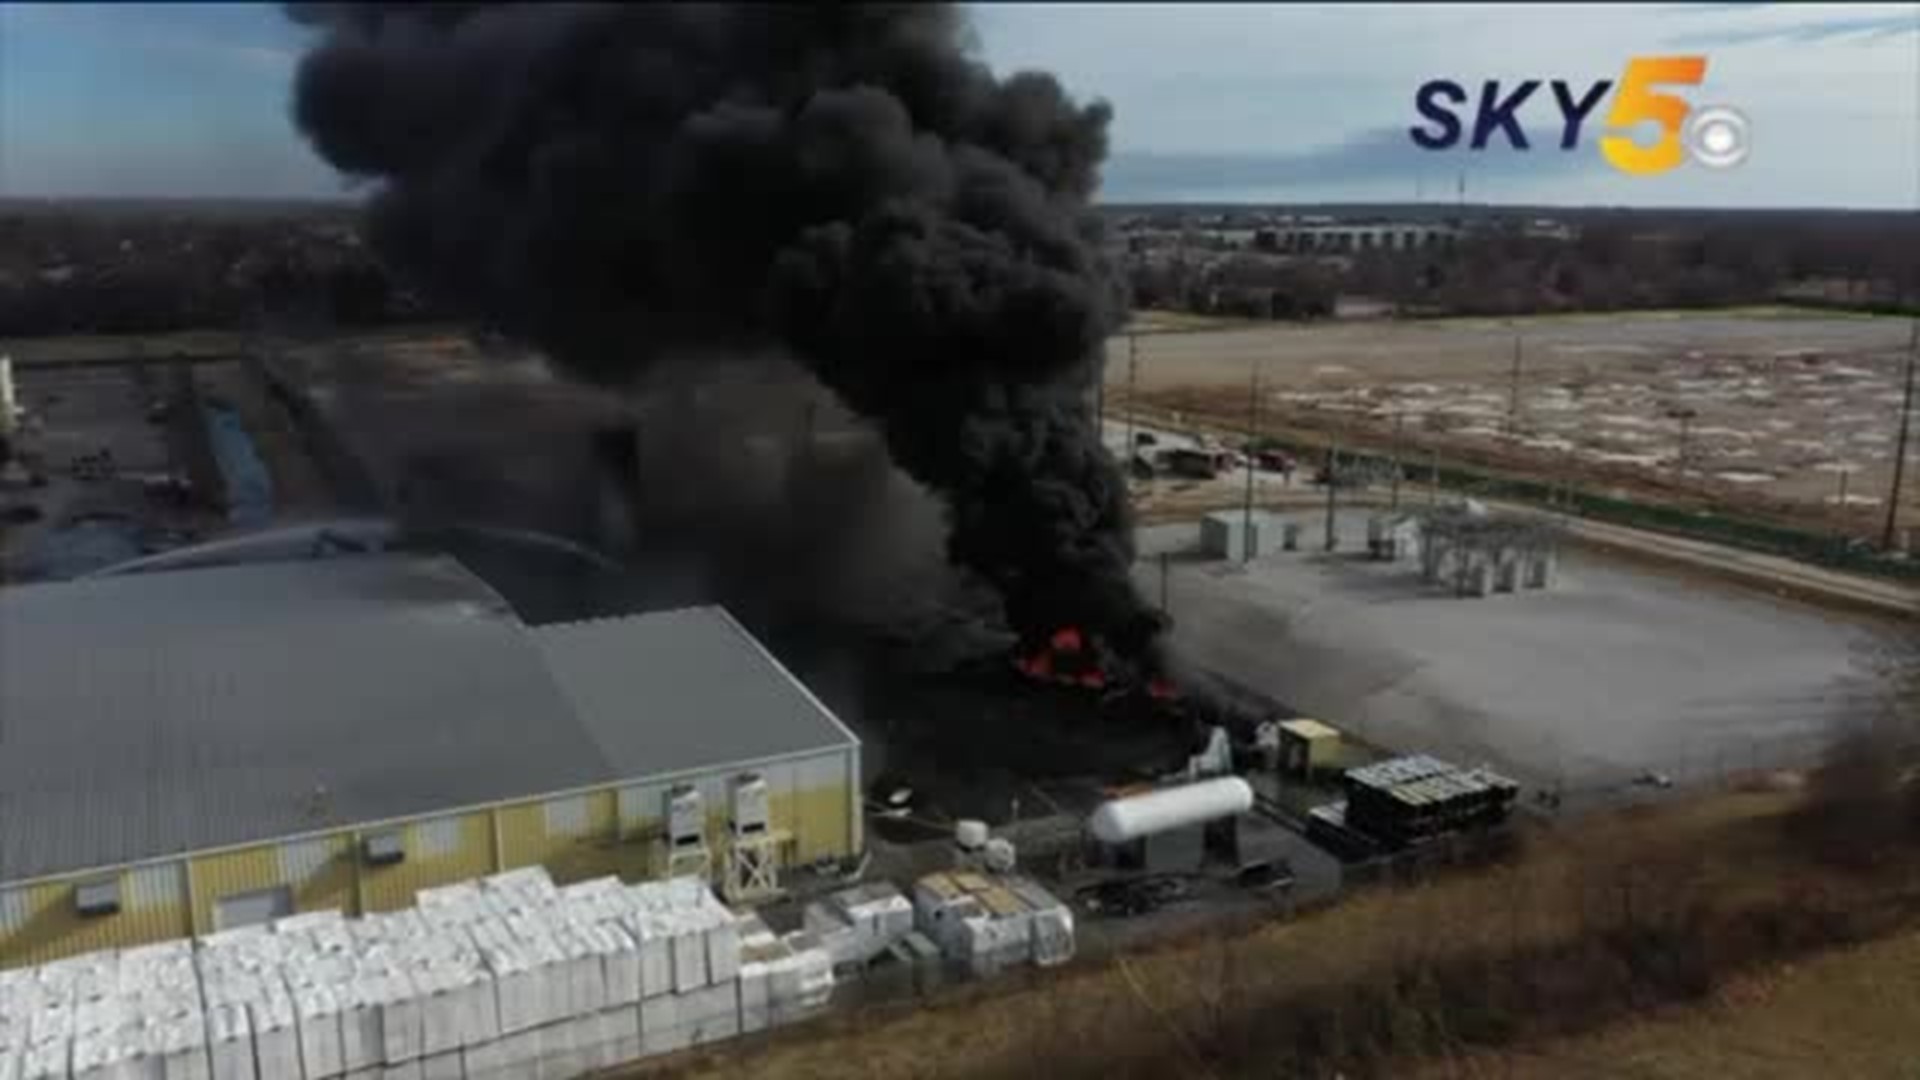 Bentonville fire SKY5 footage